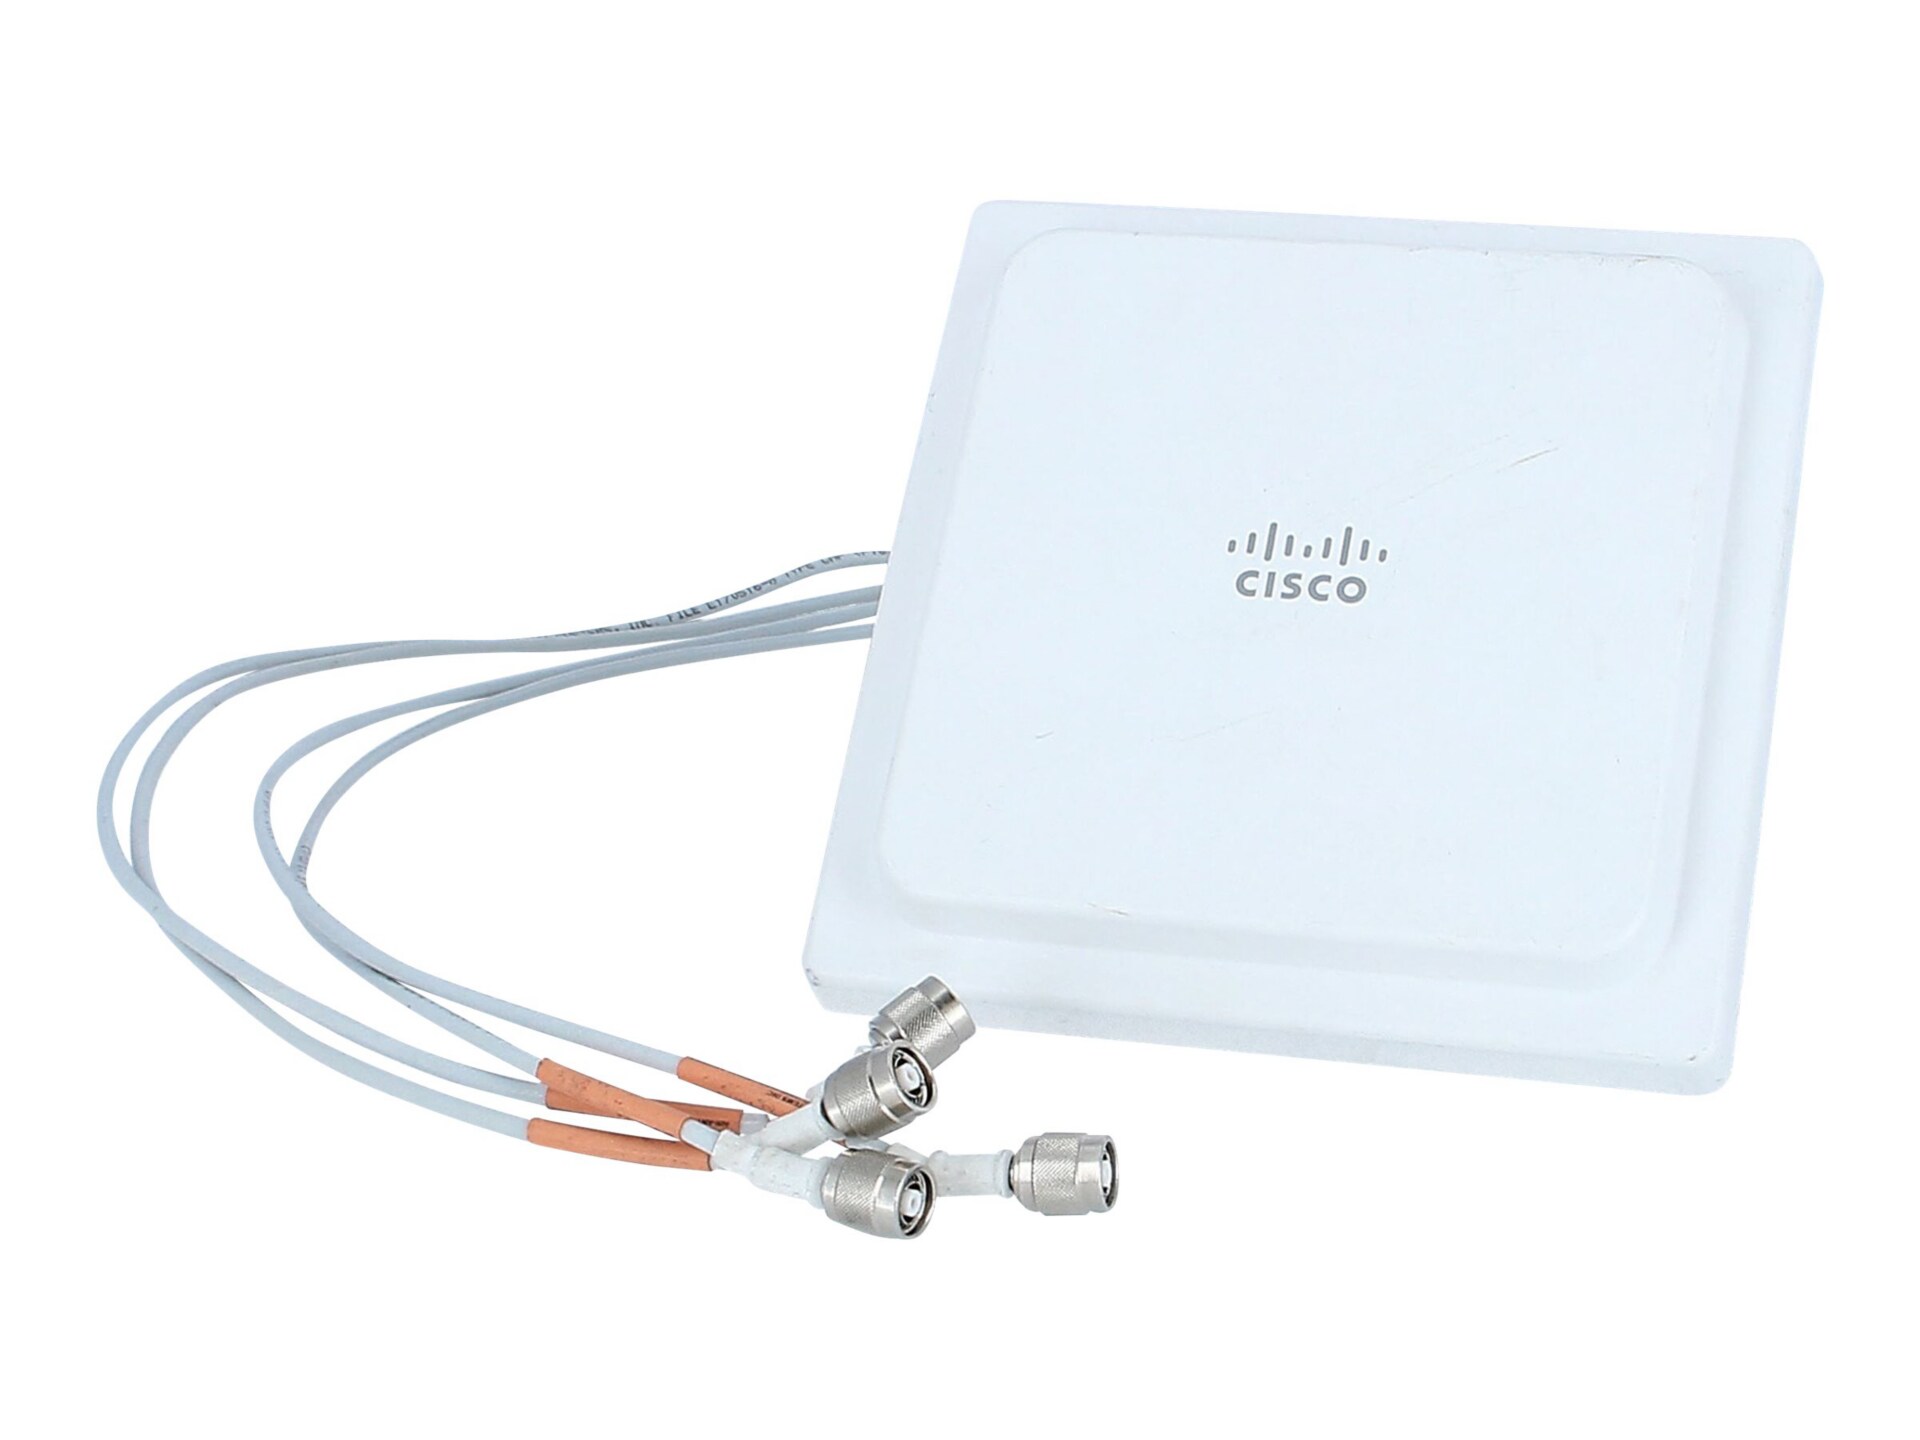 Cisco antenna